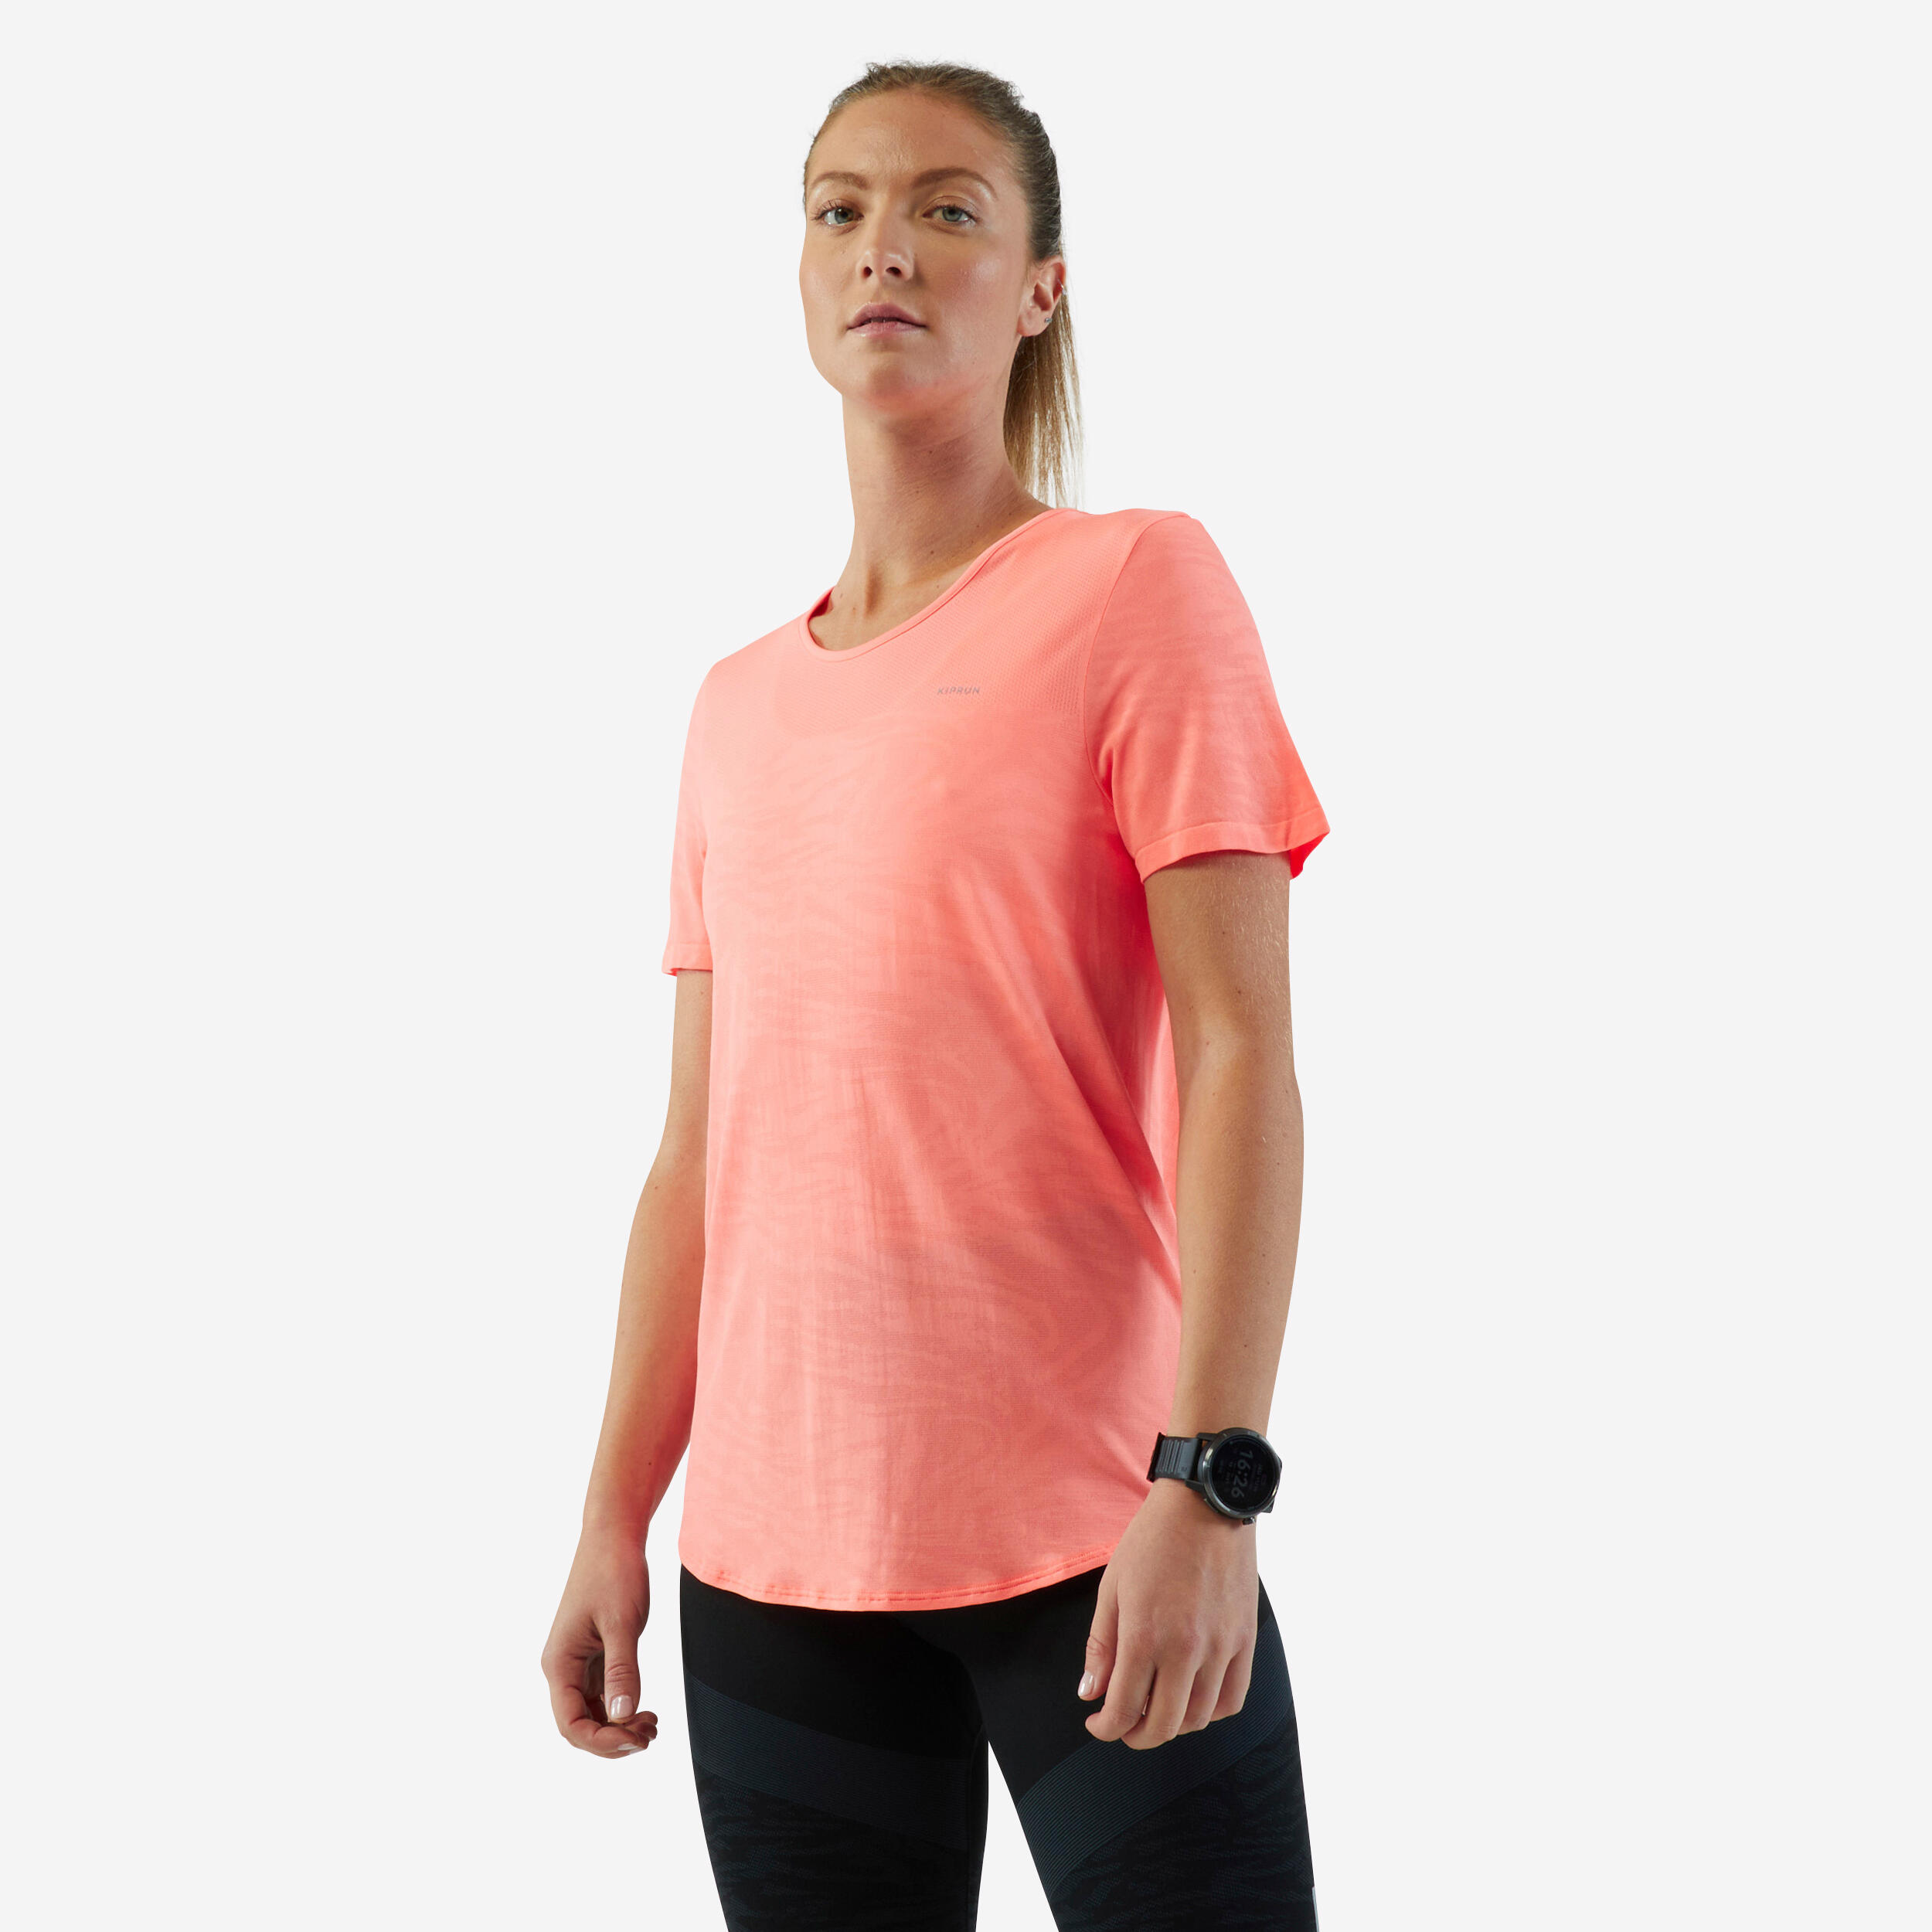 Decathlon - Kiprun Skincare, Breathable Running T-Shirt, Women's